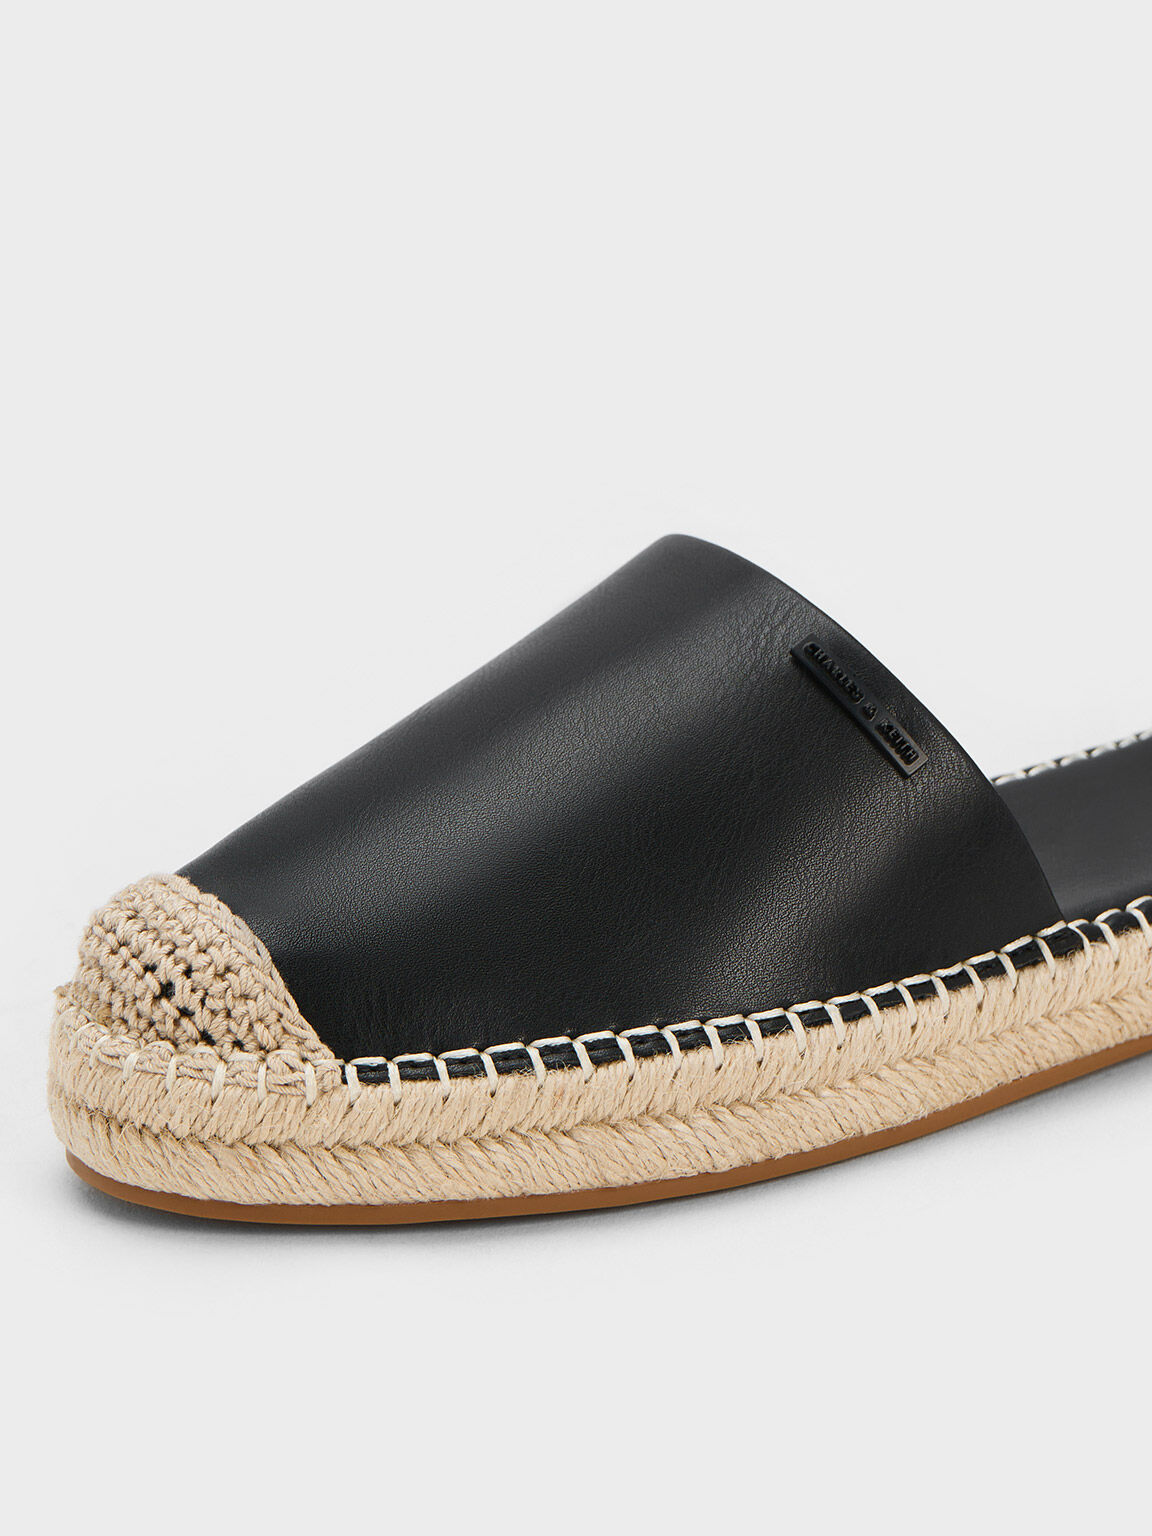 Sandal Flats Linen Ankle-Strap Espadrille, Black, hi-res